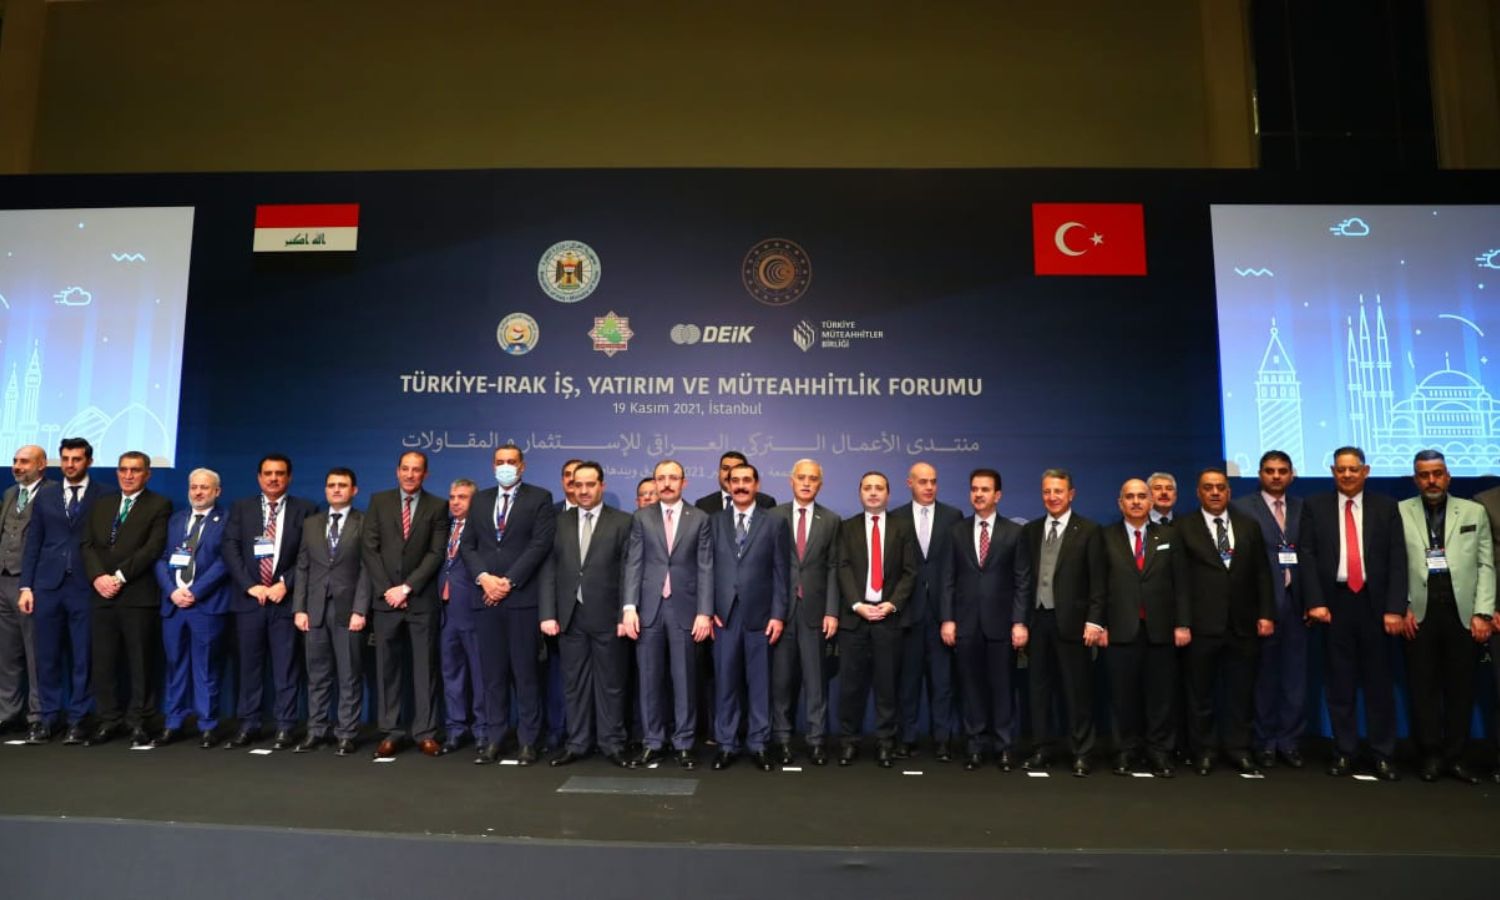 منتدى الأعمال العراقي ـ التركي للاستثمار والمقاولات المنعقد في اسطنبول، "ترك برس"، 2021.